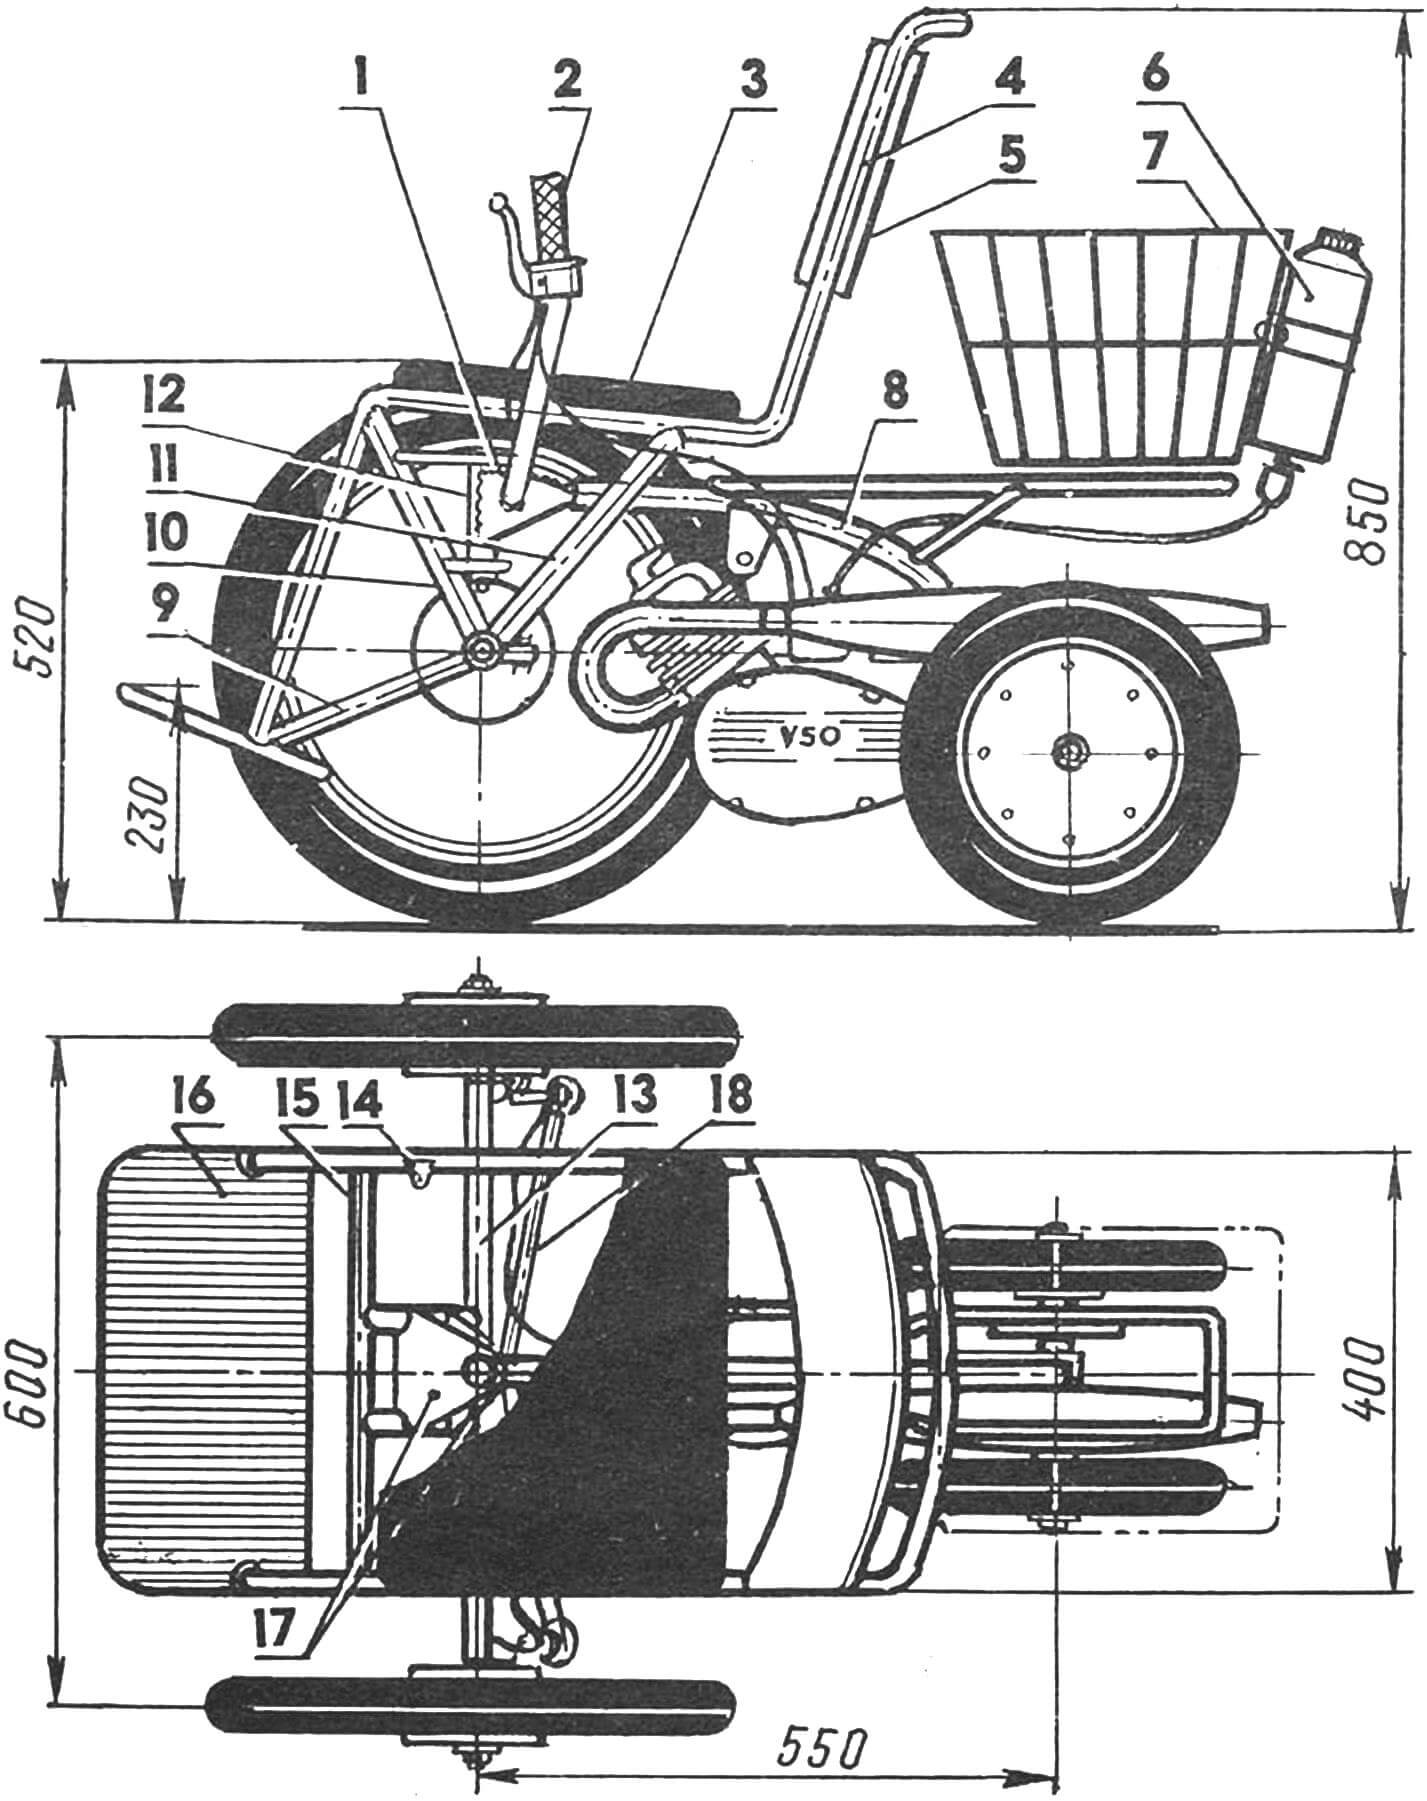 Рис. 1. Инвалидное мотокресло с двигателем V-50